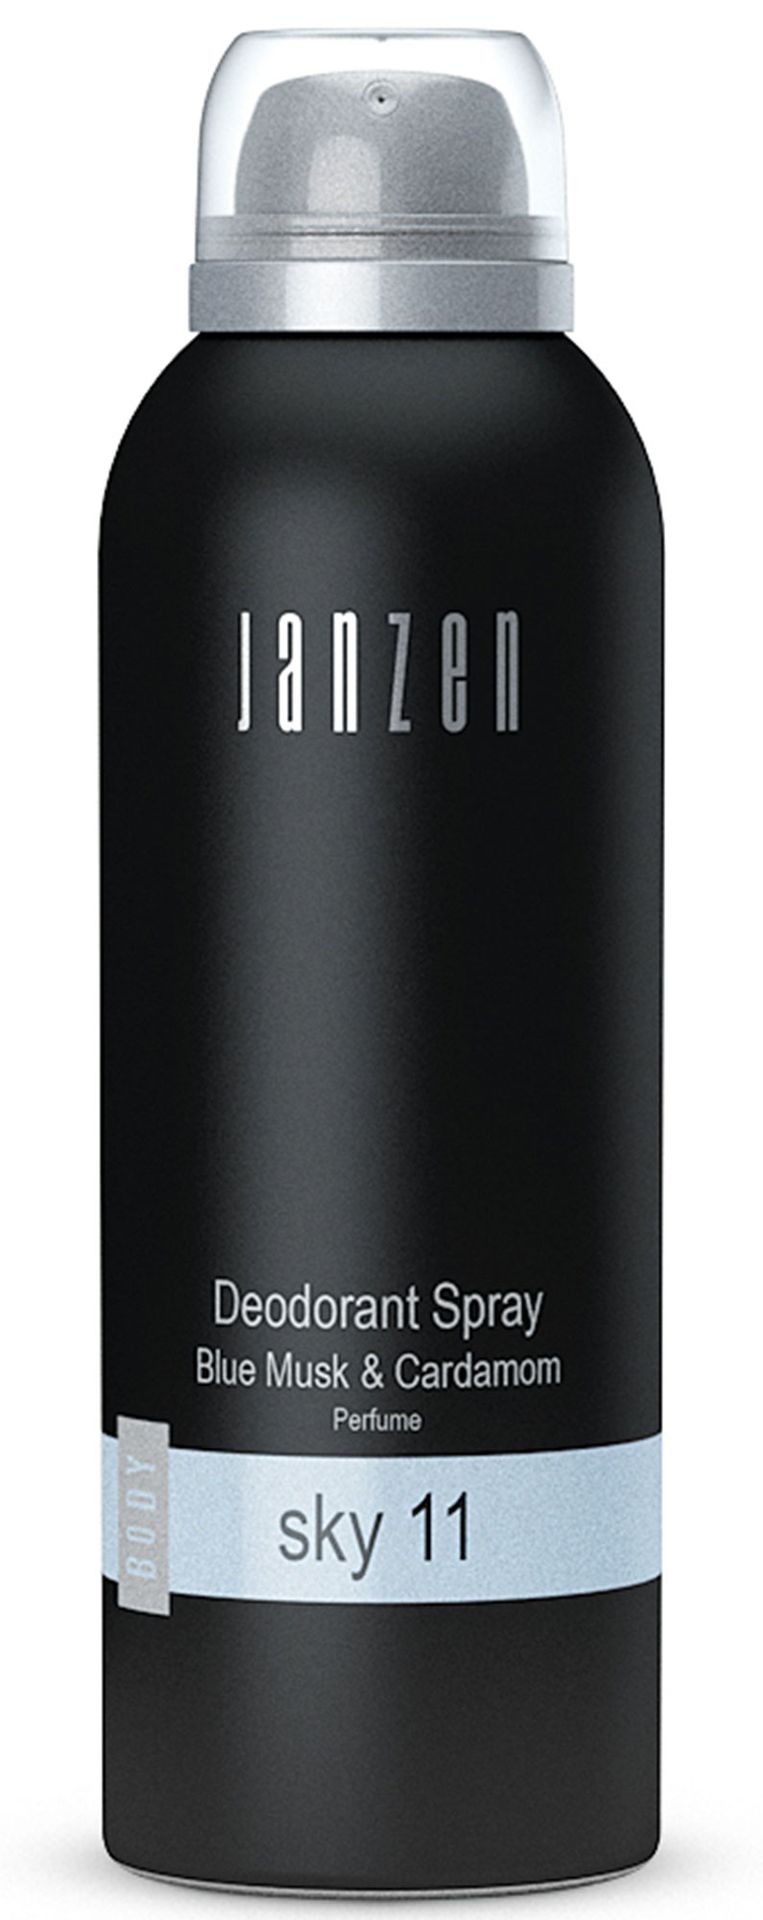 Janzen Janzen Deodorant Roze 2900017332010